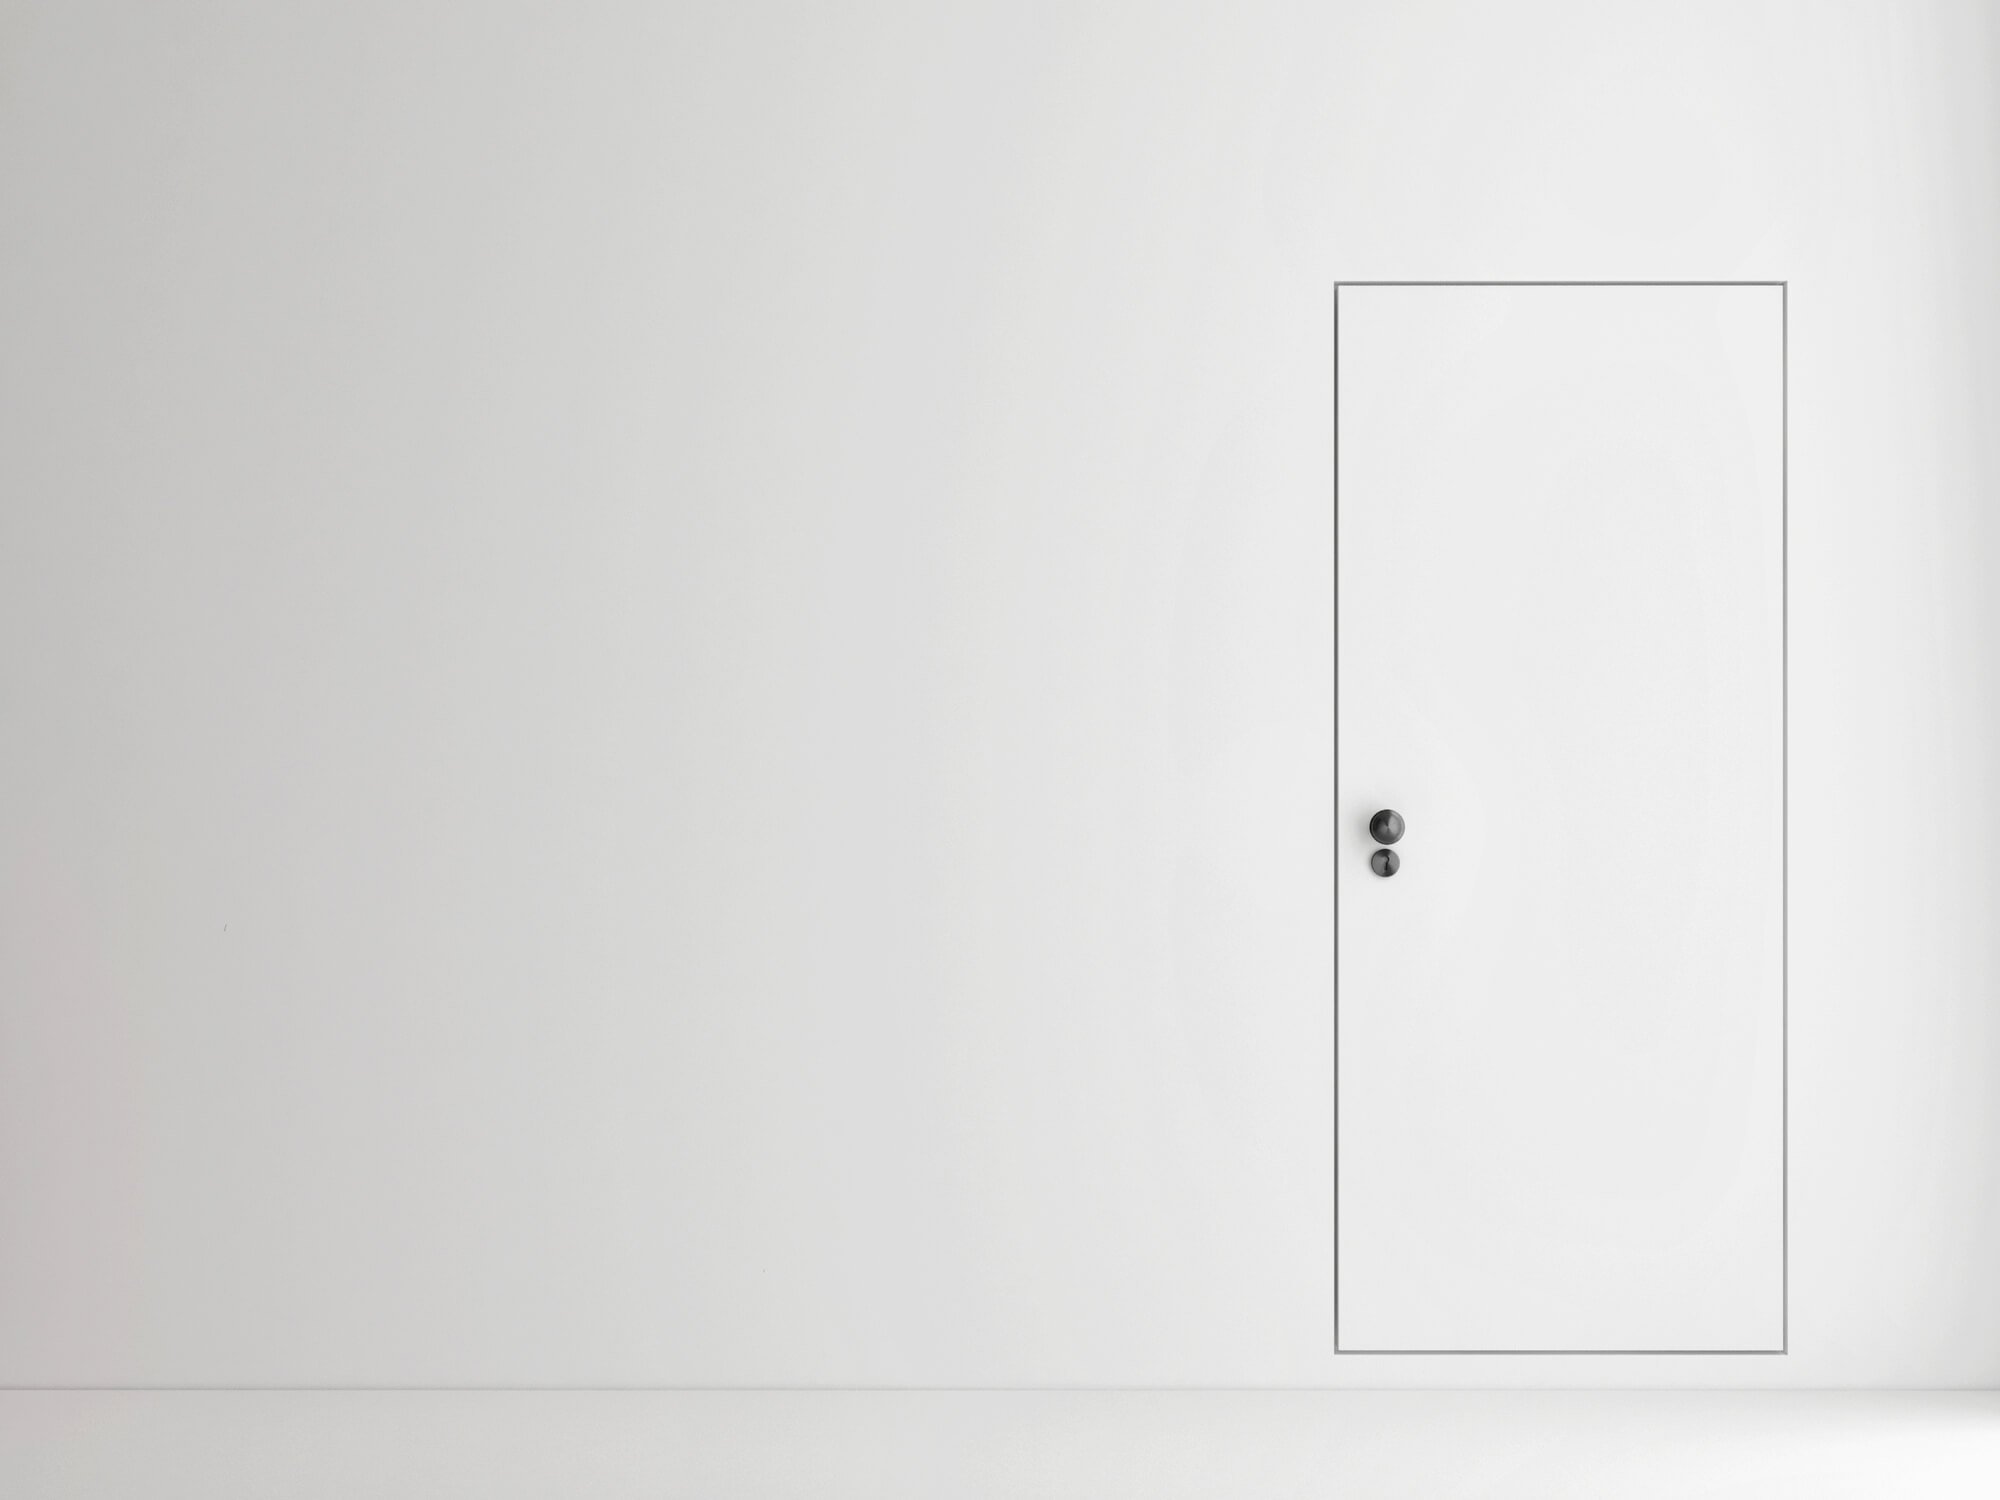 Drzwi z ukrytą ościeżnicą – montaż drzwi ukrytych w ścianie